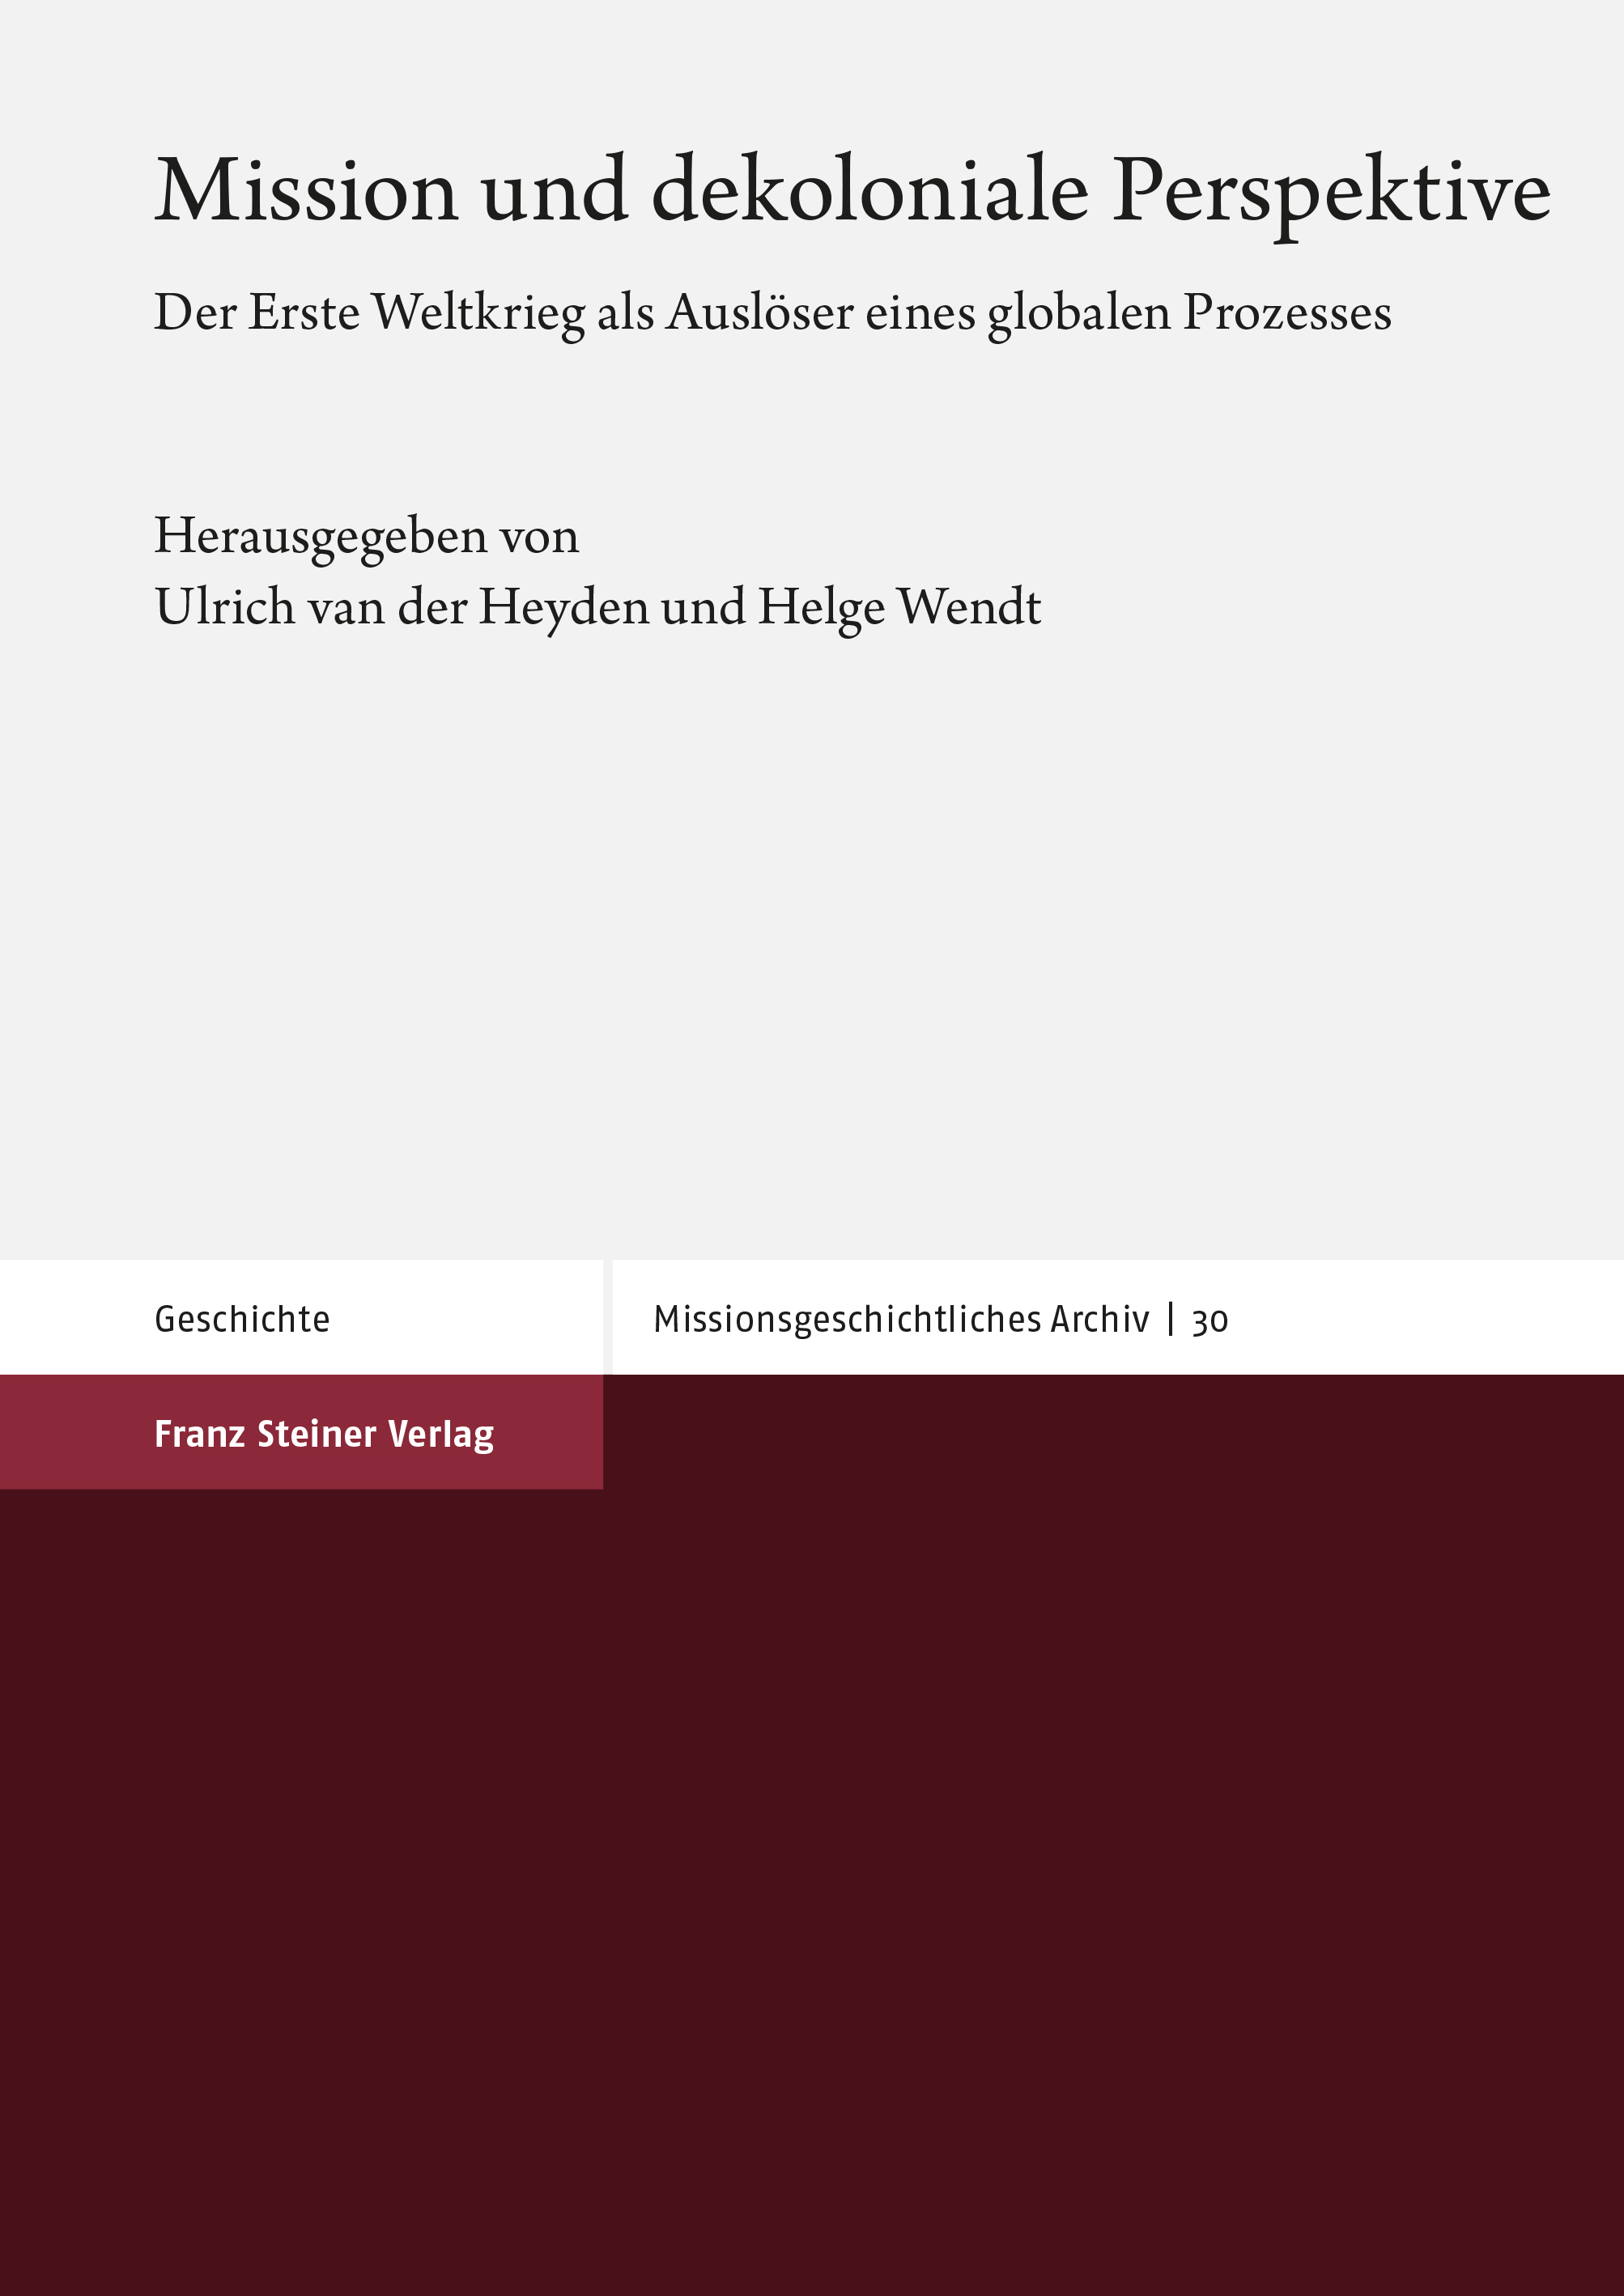 book cover: von der Heyden/ Wendt: Mission und dekoloniale Perspektive. Der erste Weltkrieg als Auslöser eines globalen Prozesses (2020)